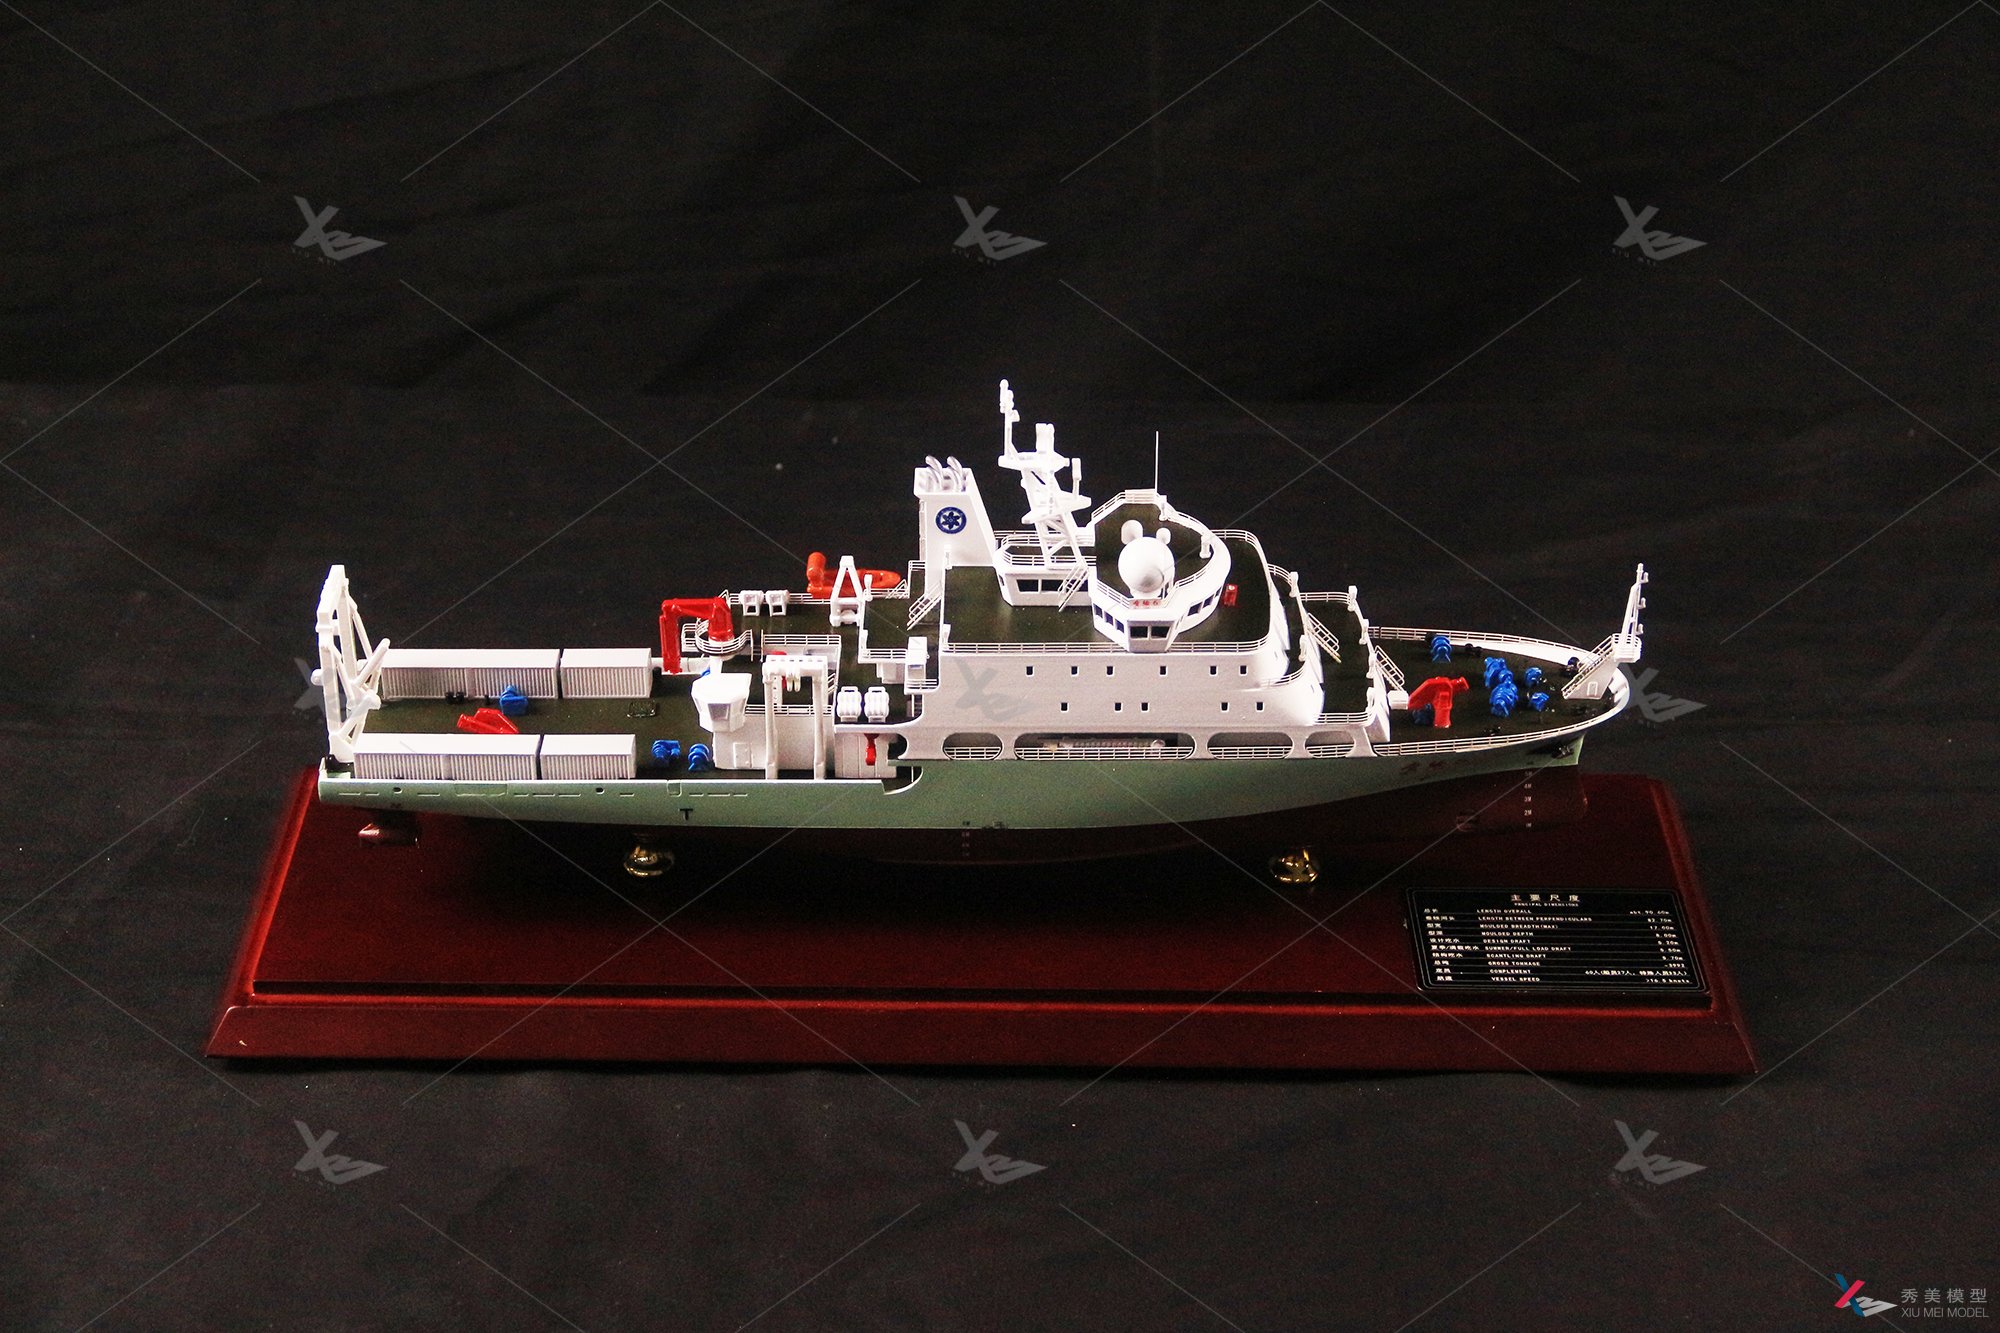 公务船模型-科学考察船“实验6”号模型船